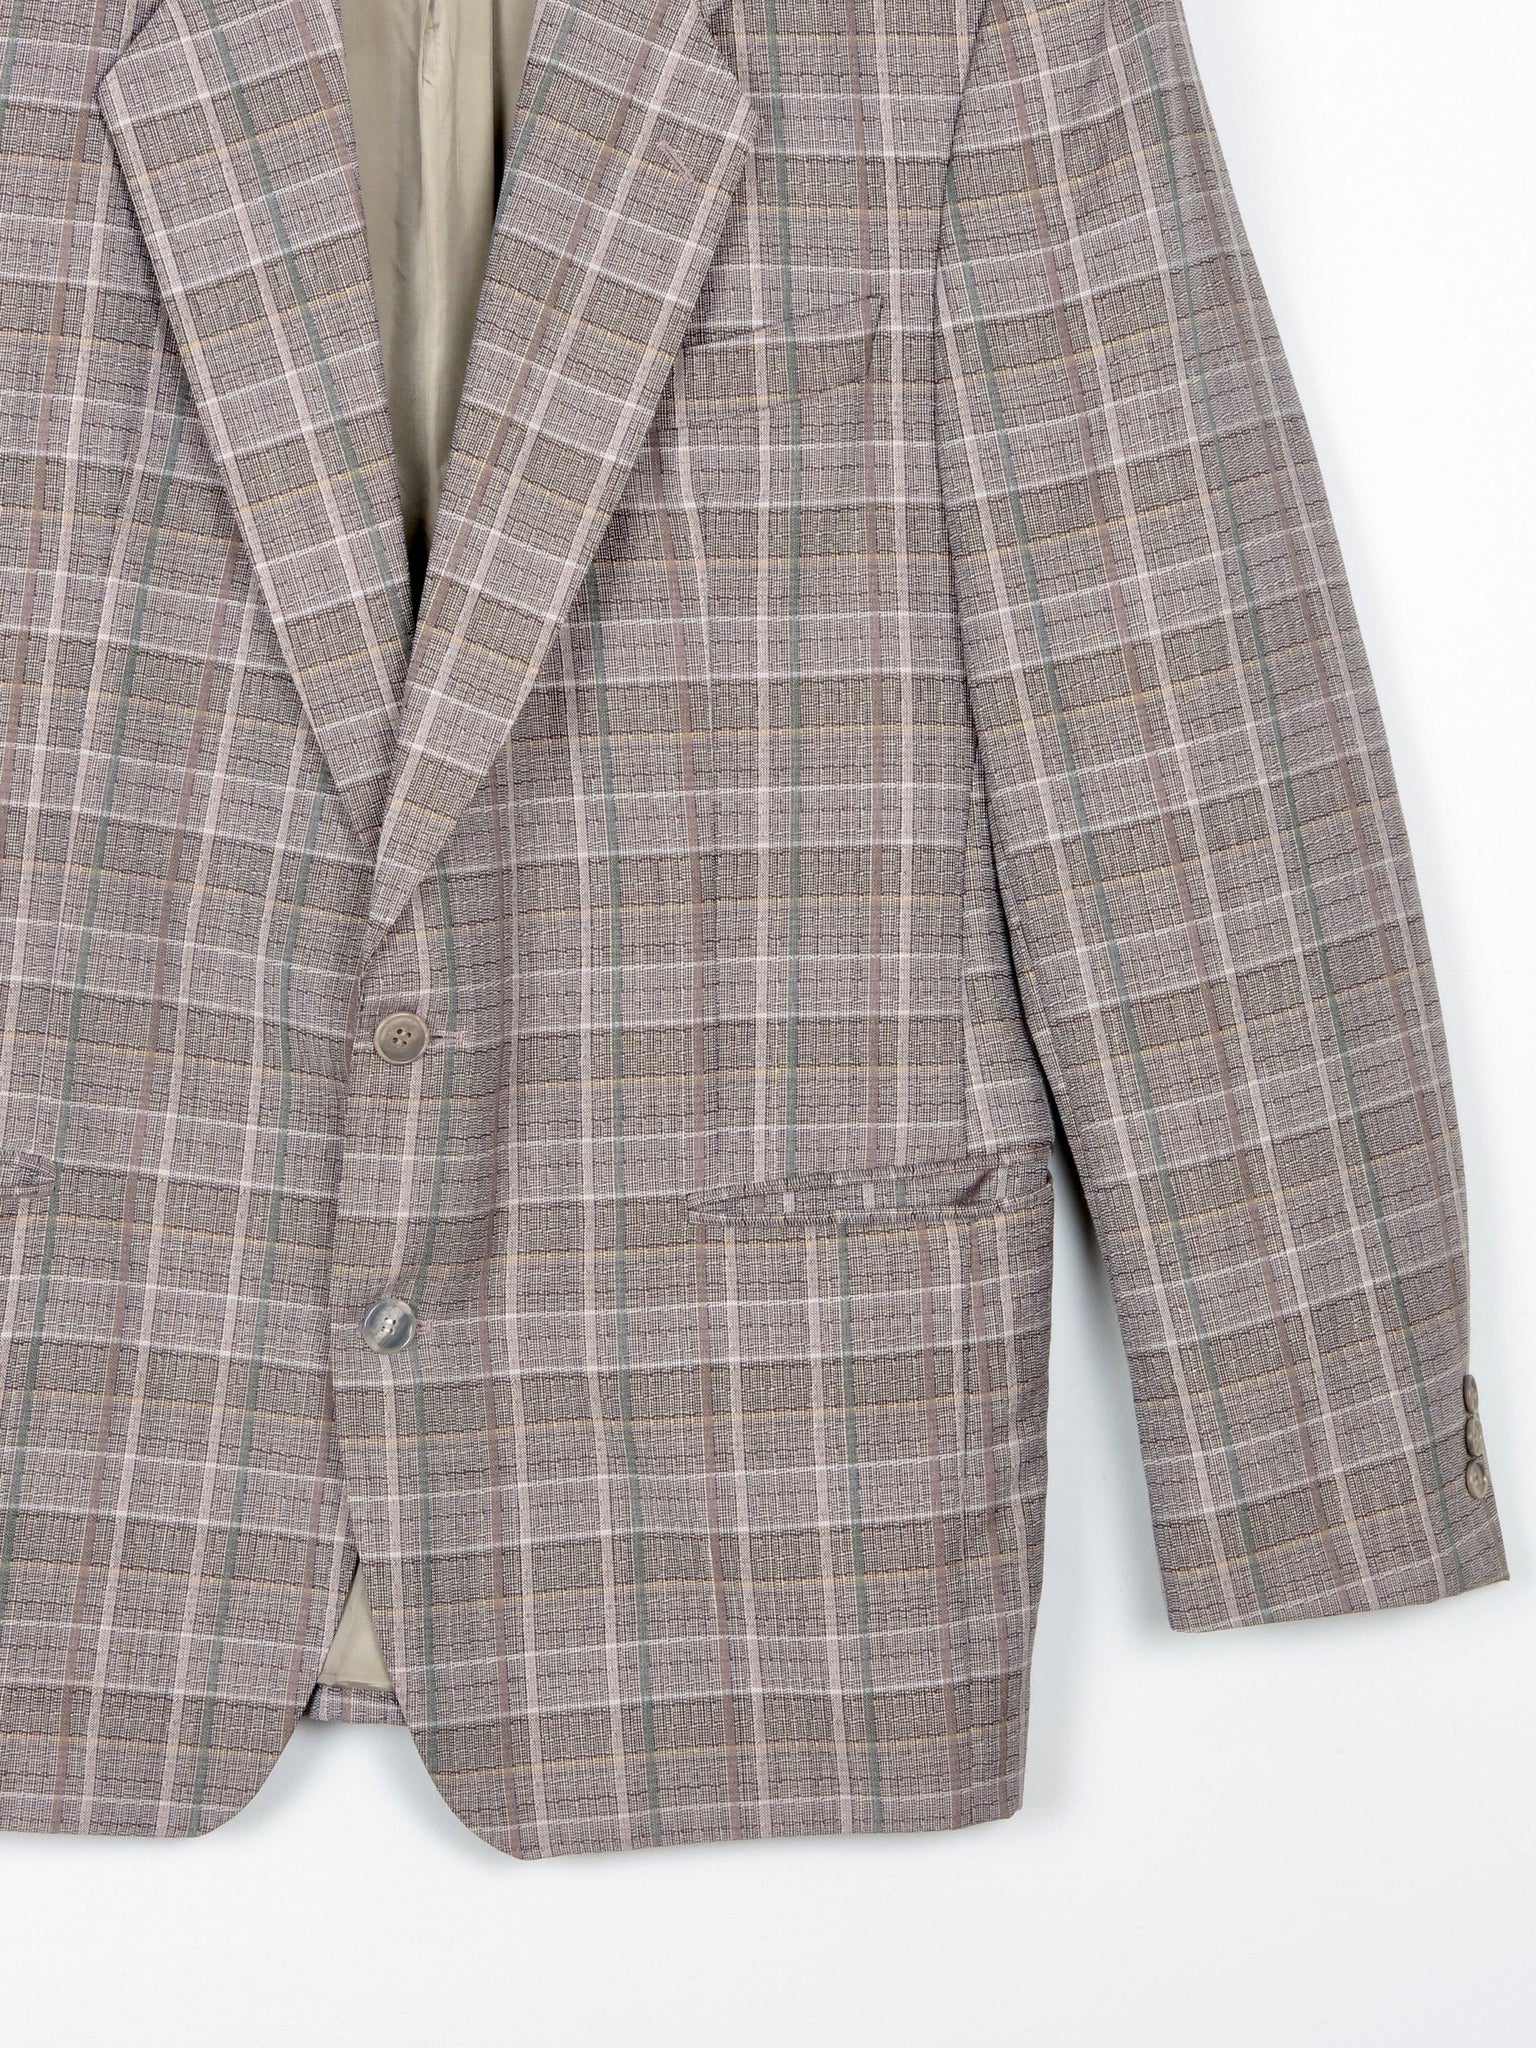 Men's Check Taupe Vintage Jacket 42" - The Harlequin